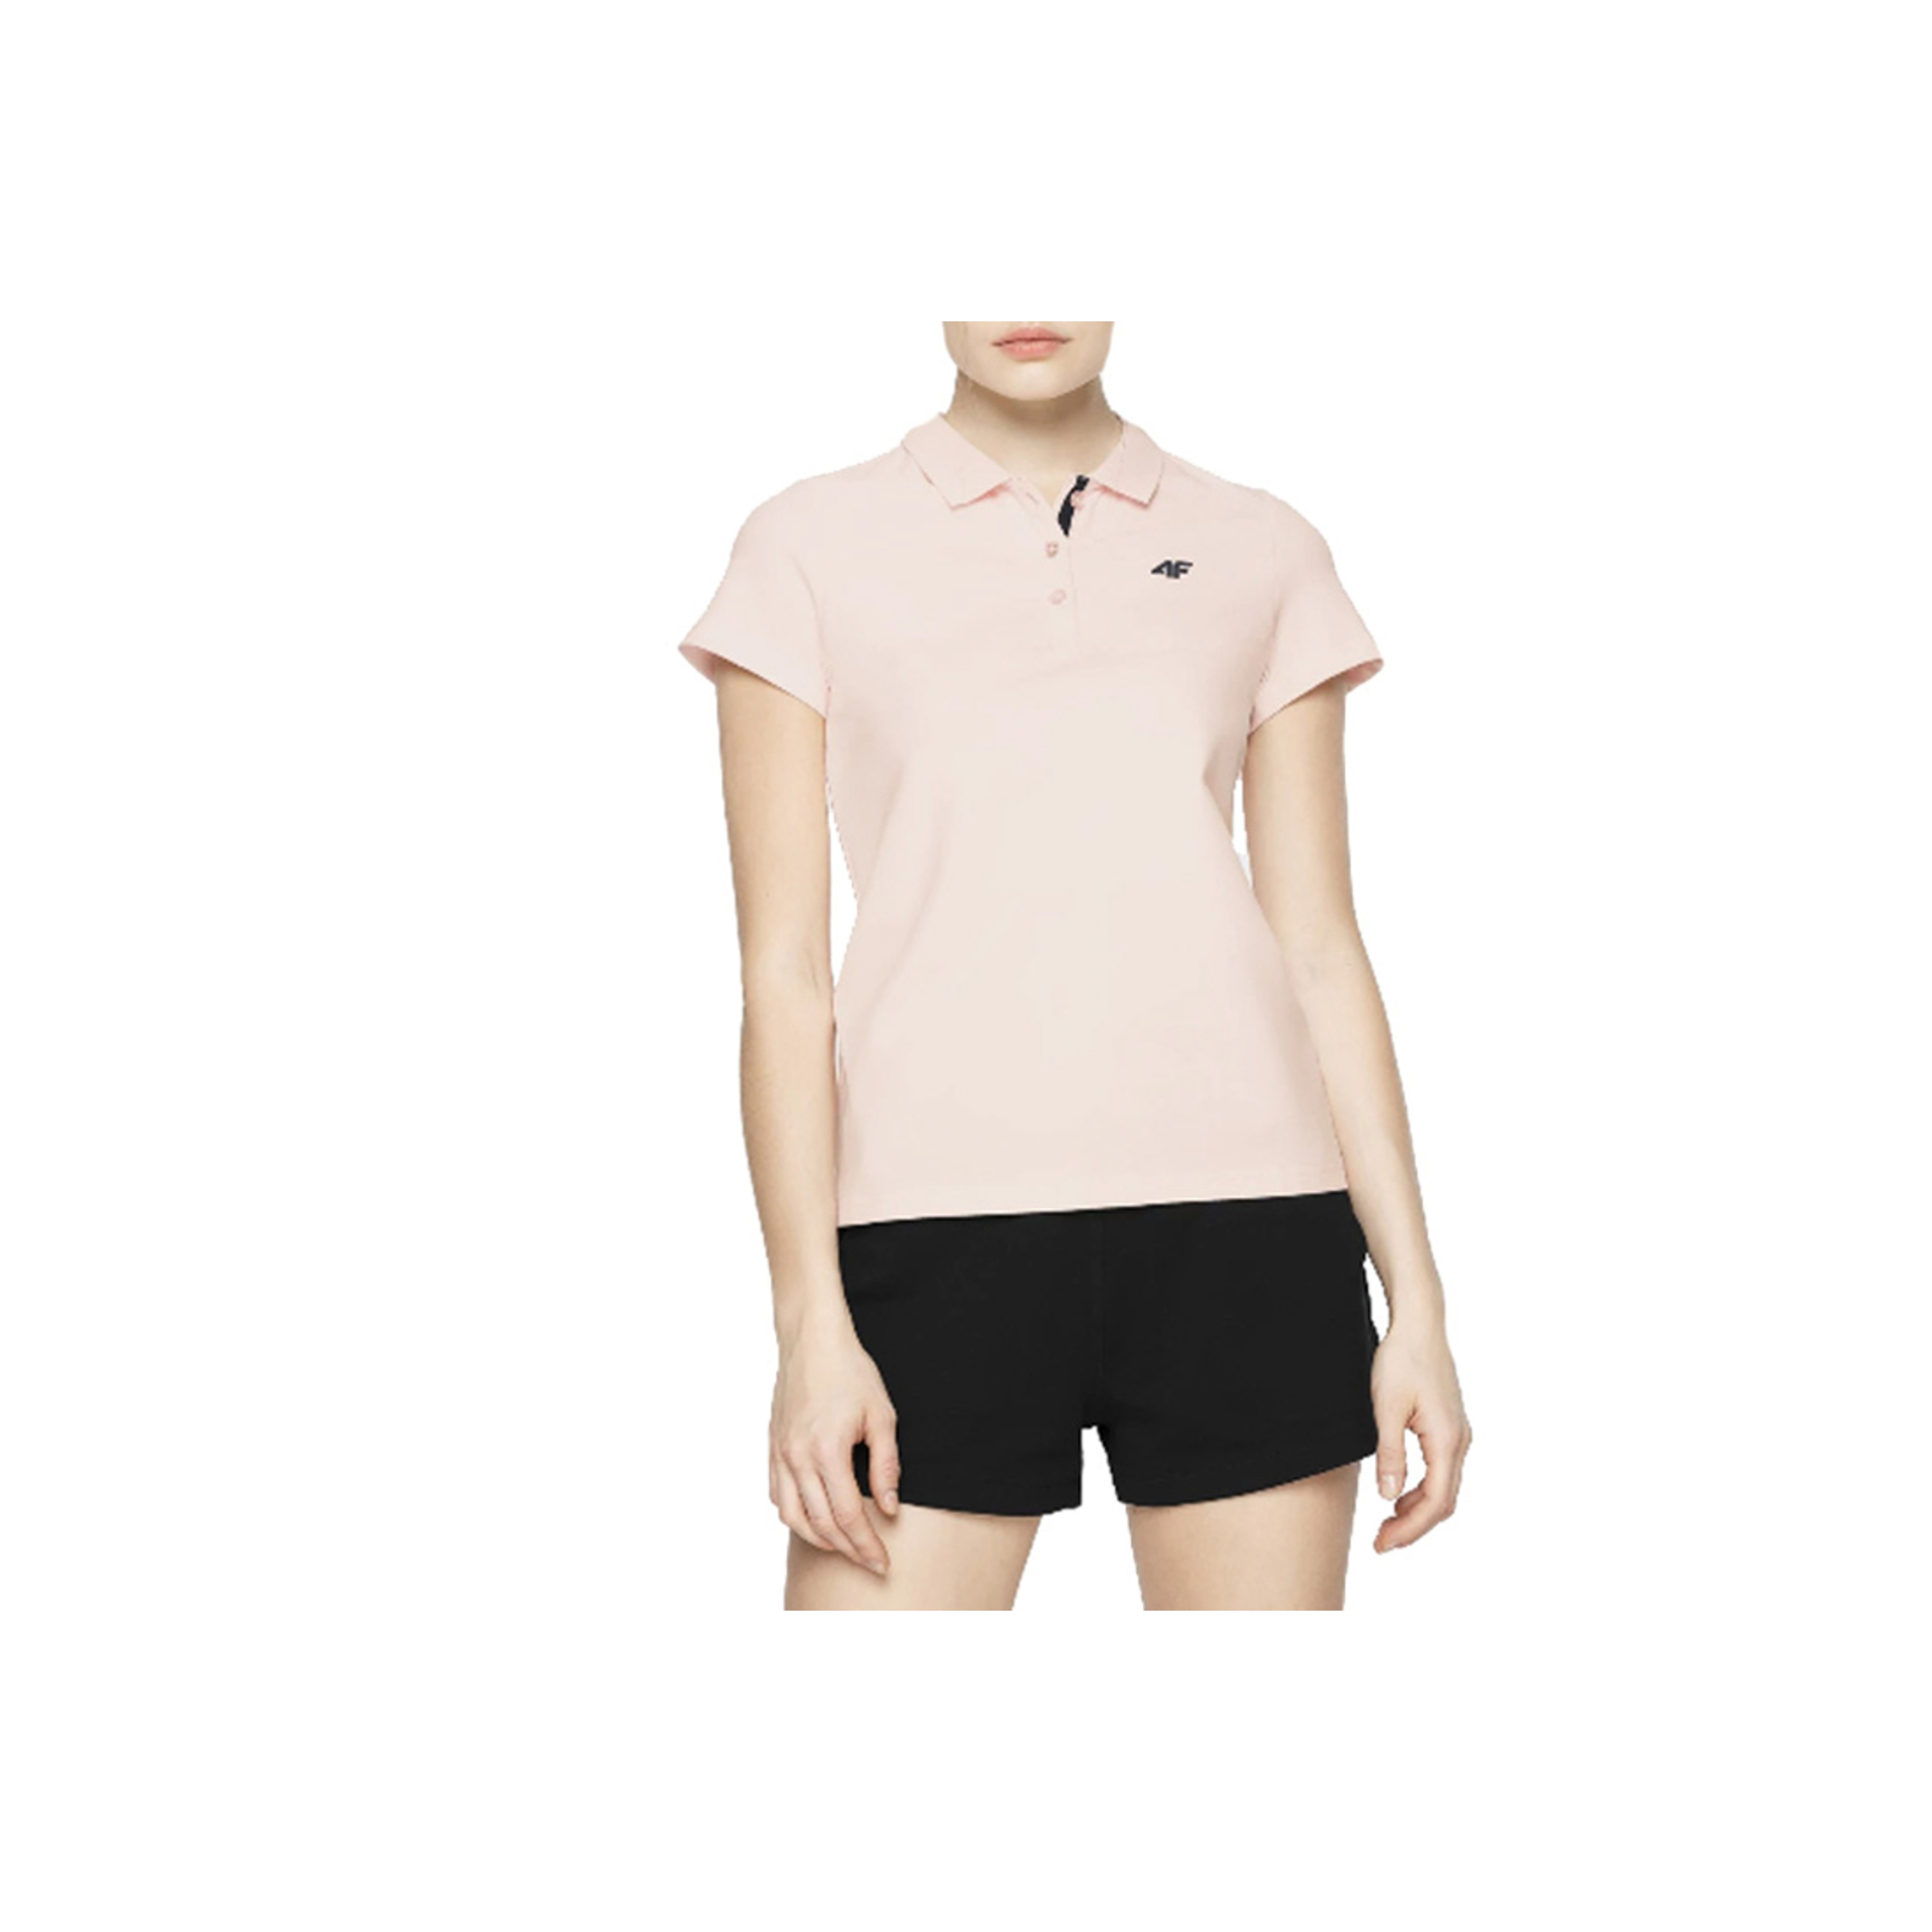 4f Women's T-shirt Polo Nosh4-tsd007-56s